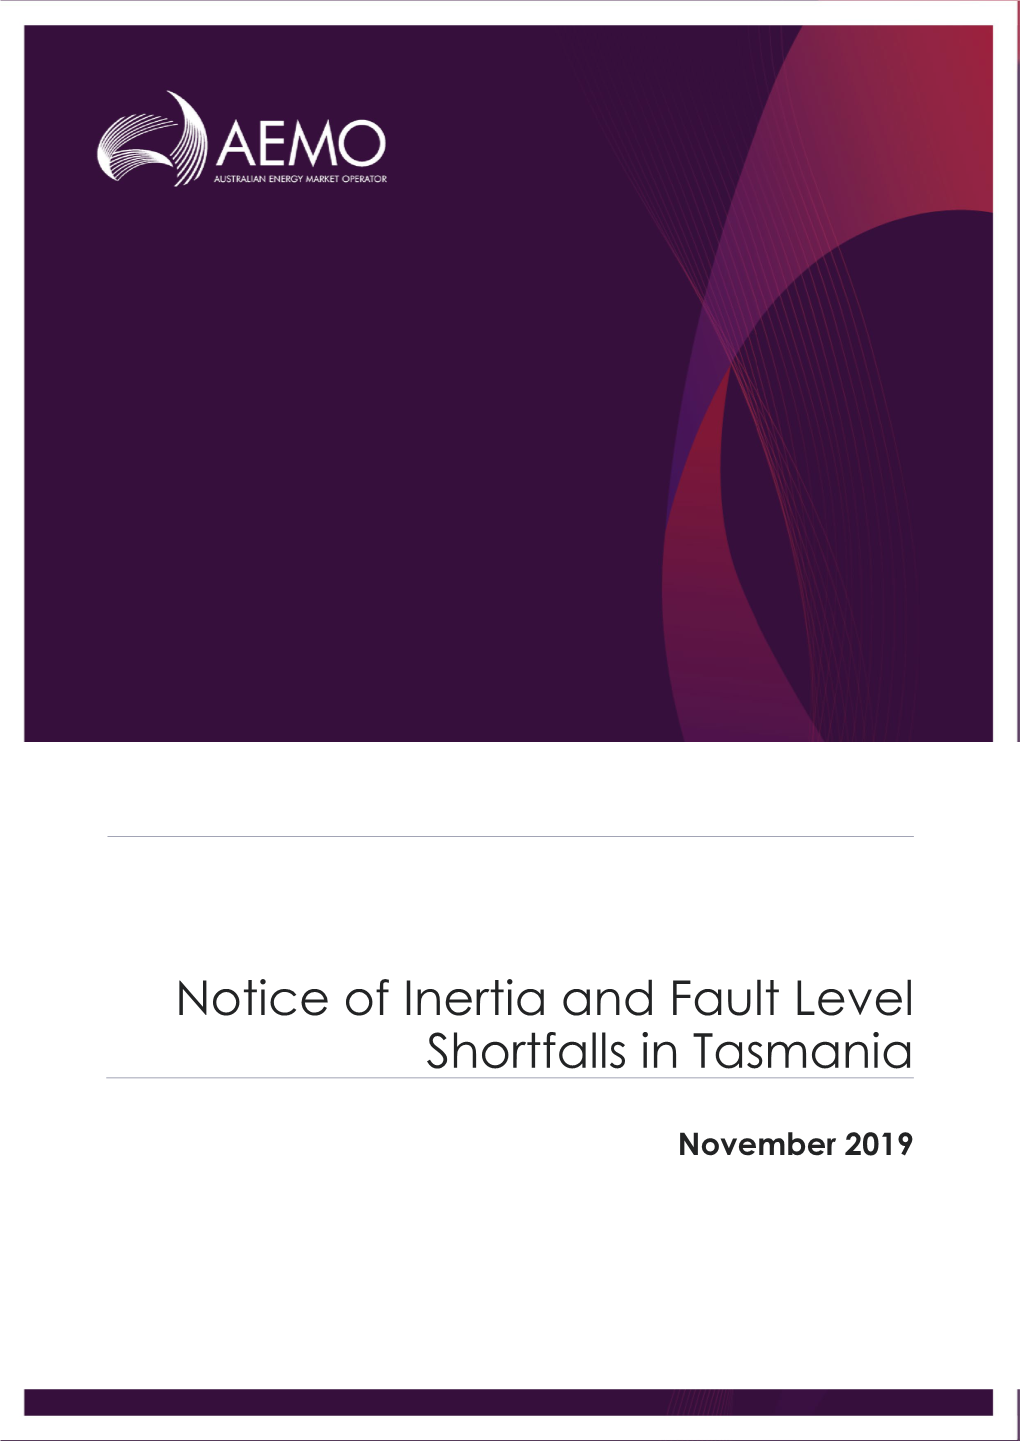 Notice of Inertia and Fault Level Shortfalls in Tasmania